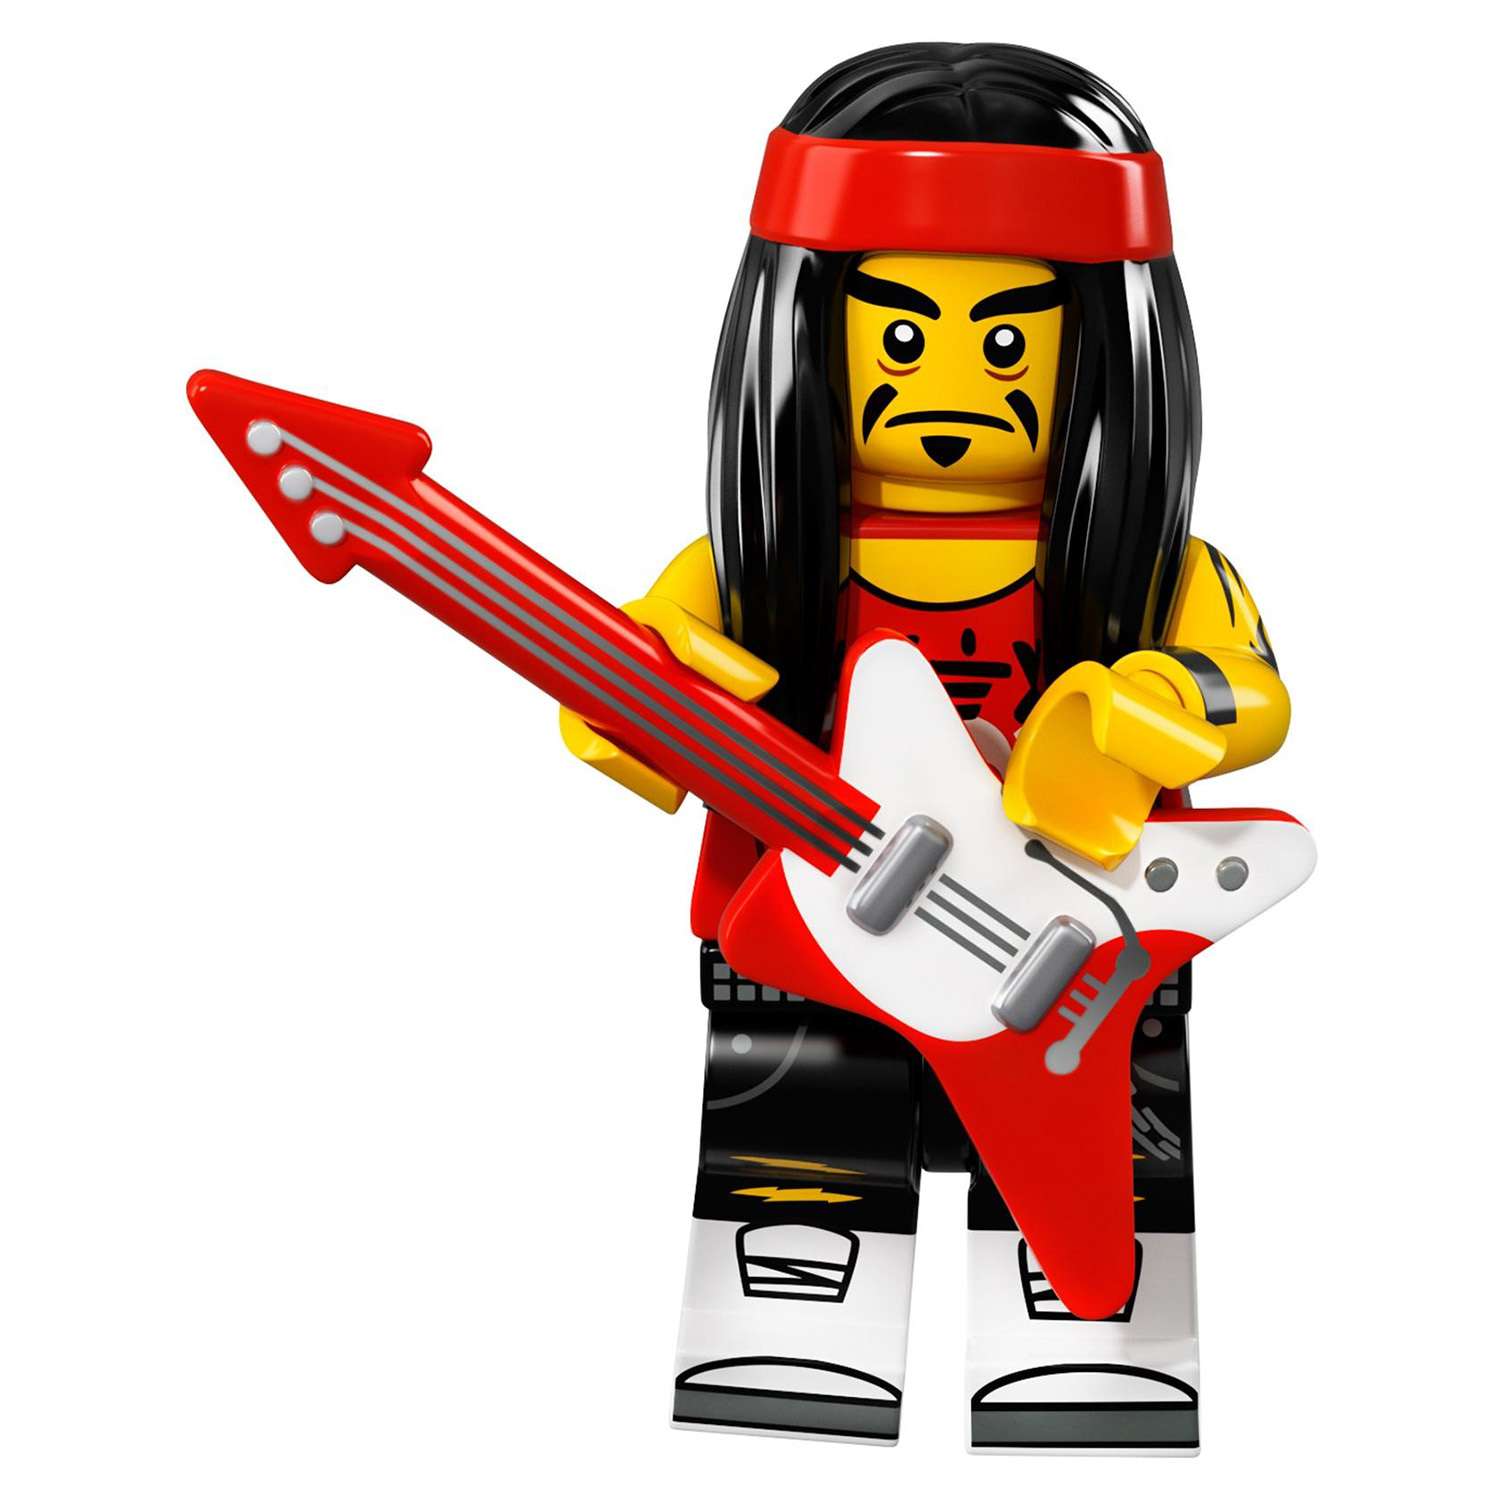 Конструктор LEGO Minifigures Минифигурки ФИЛЬМ: НИНДЗЯГО (71019) в ассортименте - фото 41